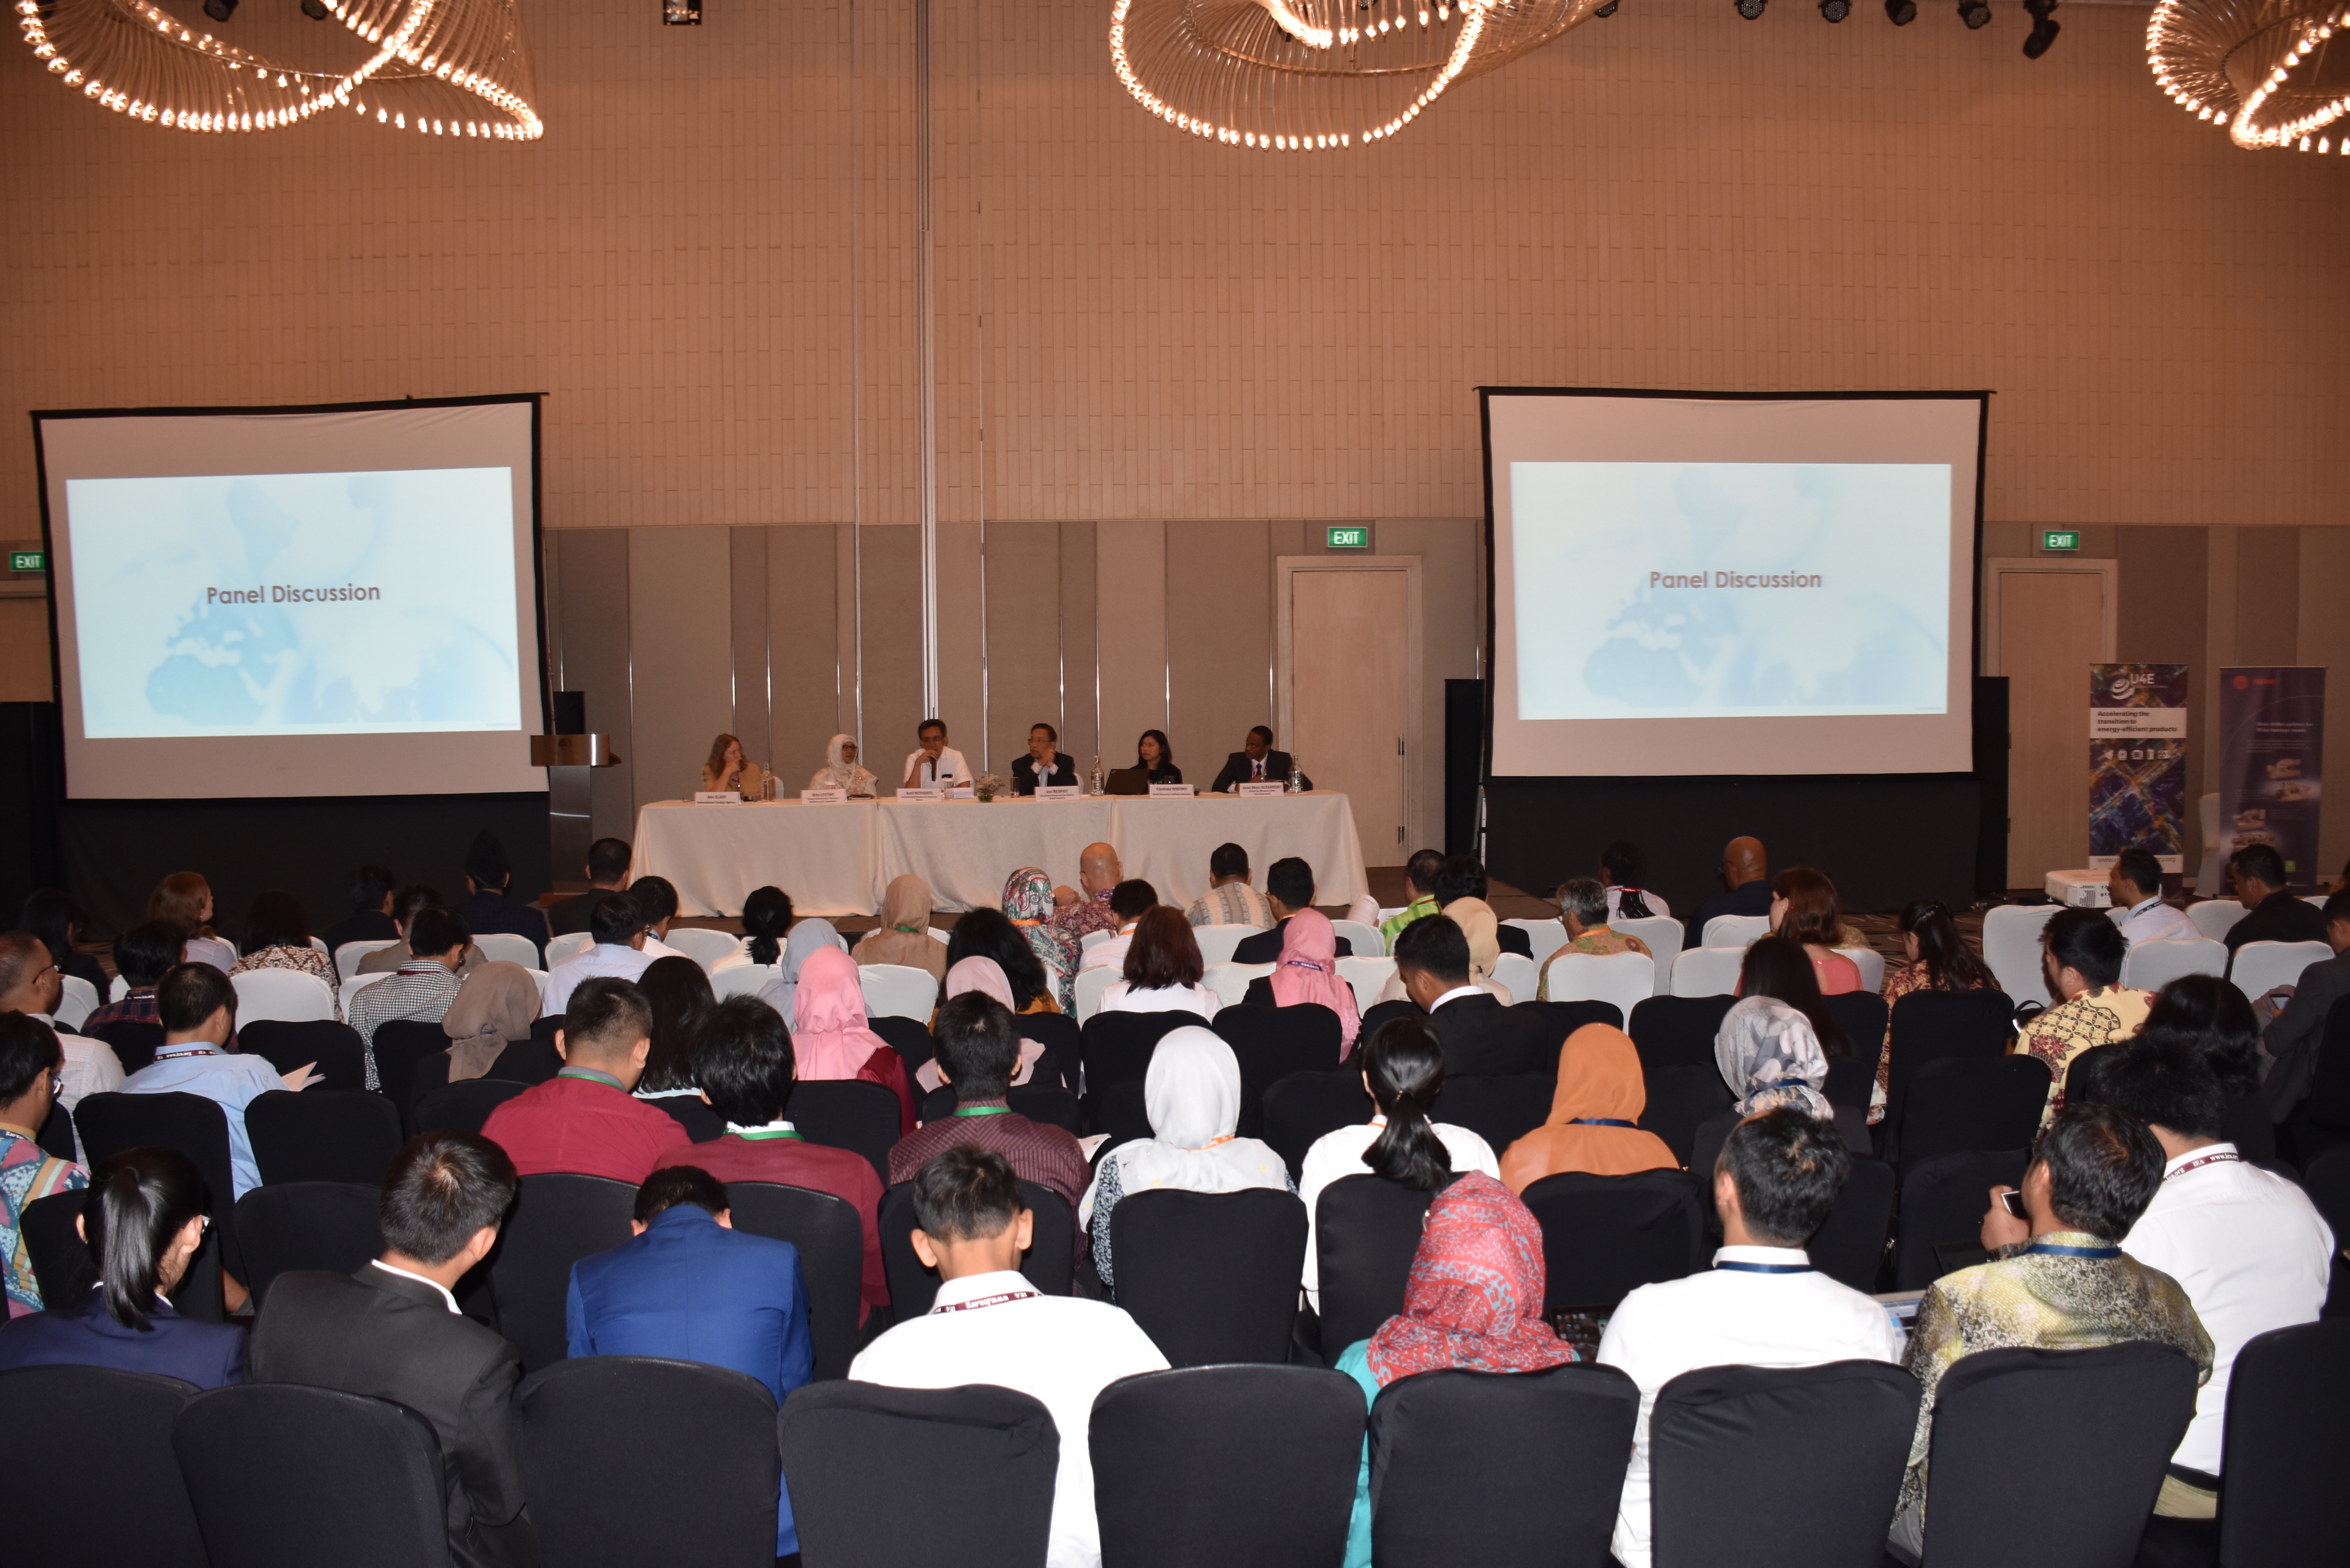 Suasana Diskusi Panel dihadiri oleh peserta dari berbagai kalangan